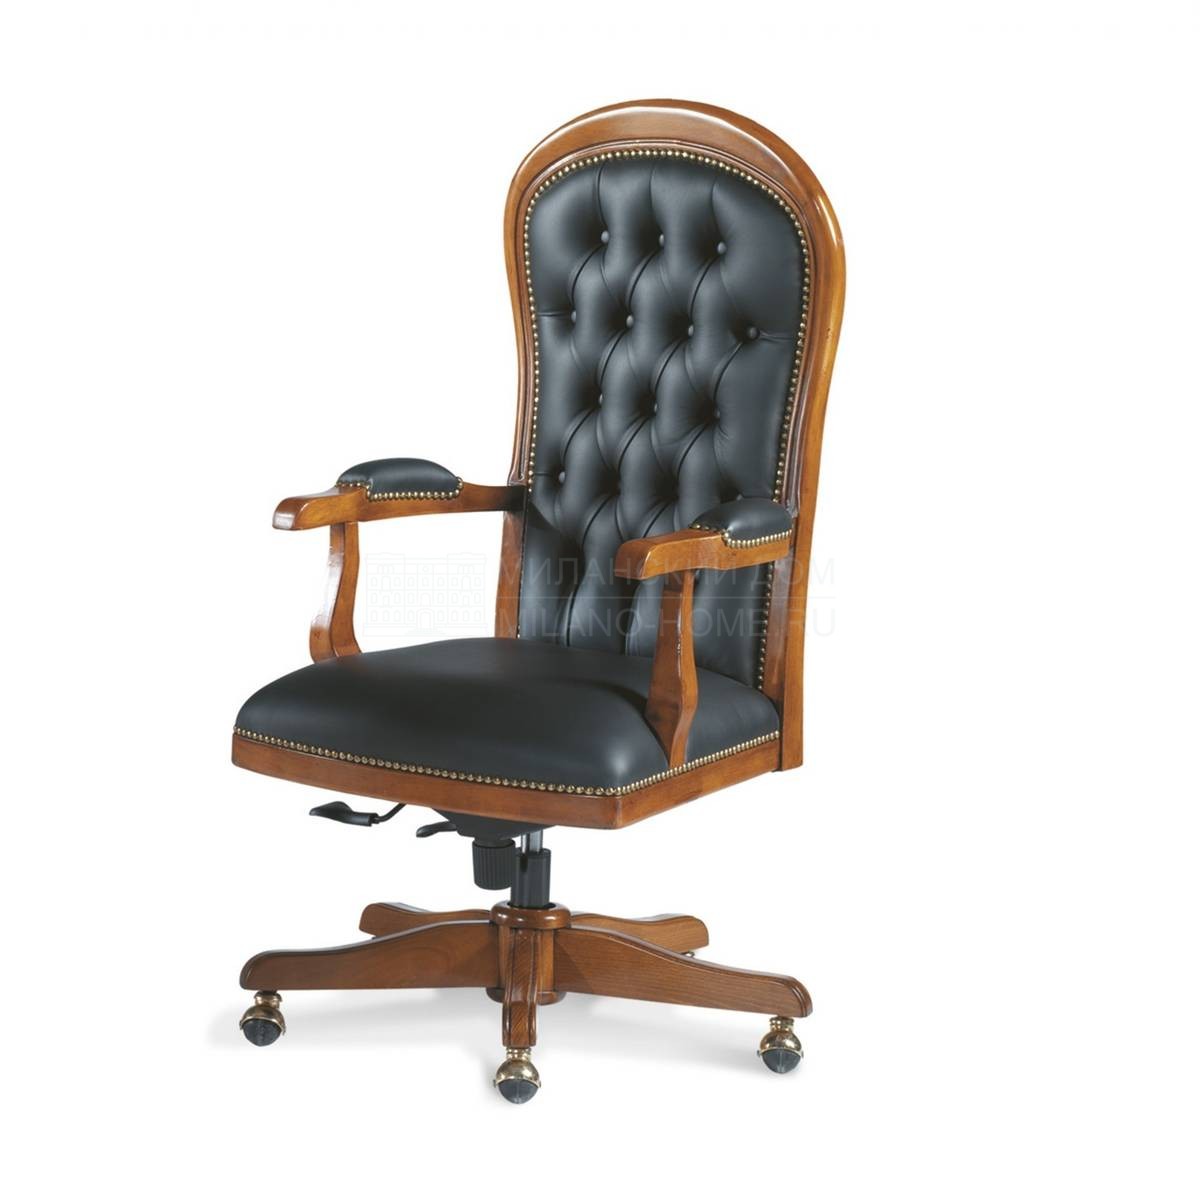 Кресло руководителя Executive /art.P408 из Италии фабрики FRANCESCO MOLON